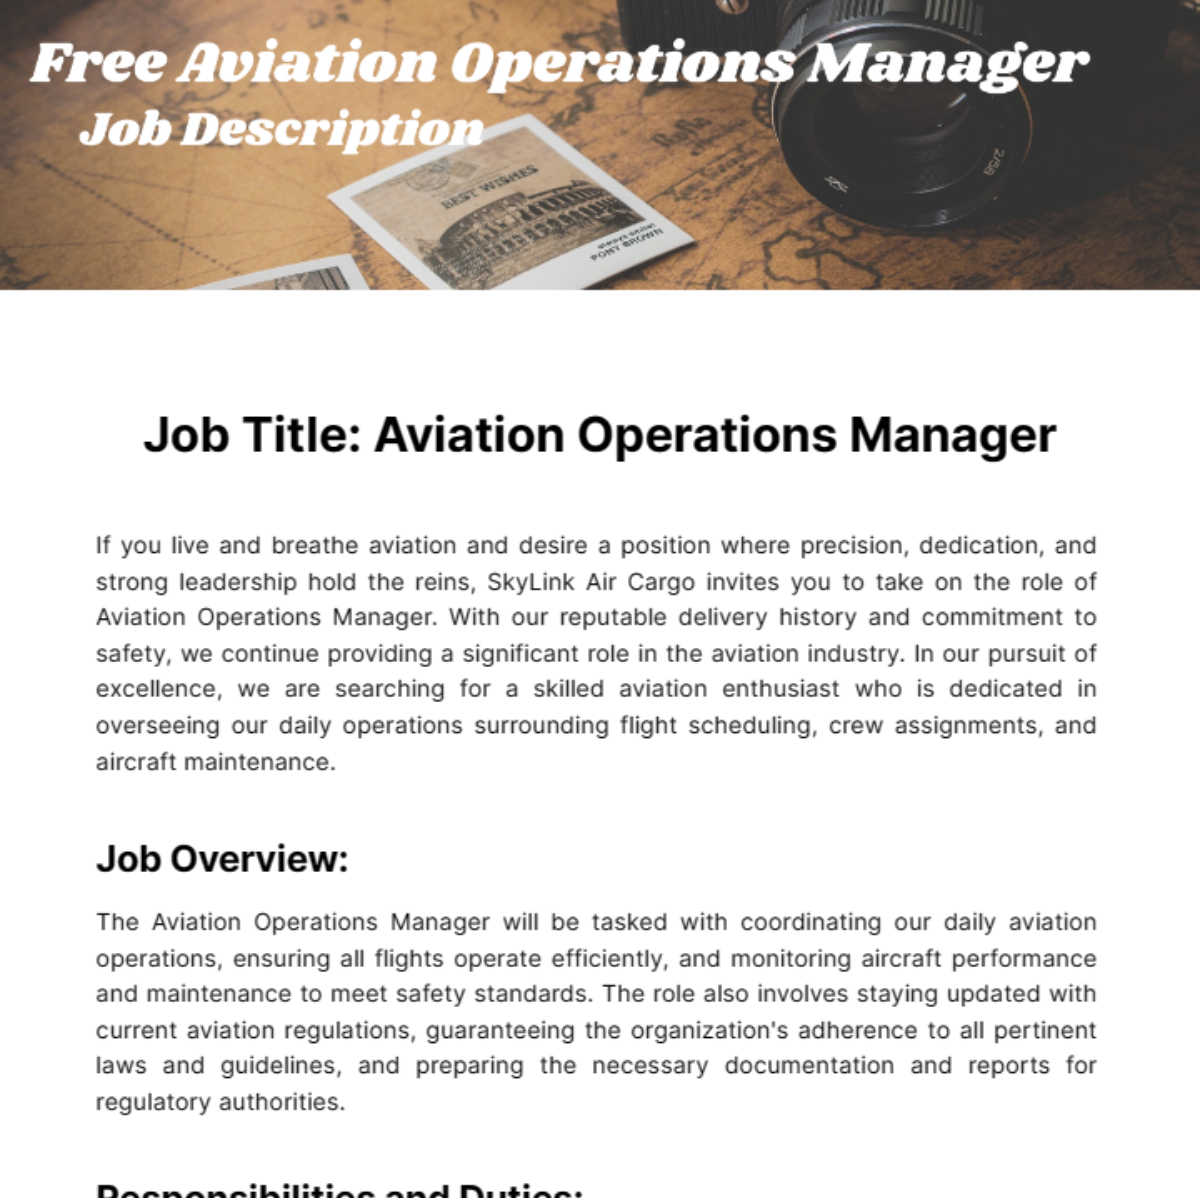 Free Aviation Management Job Description Template